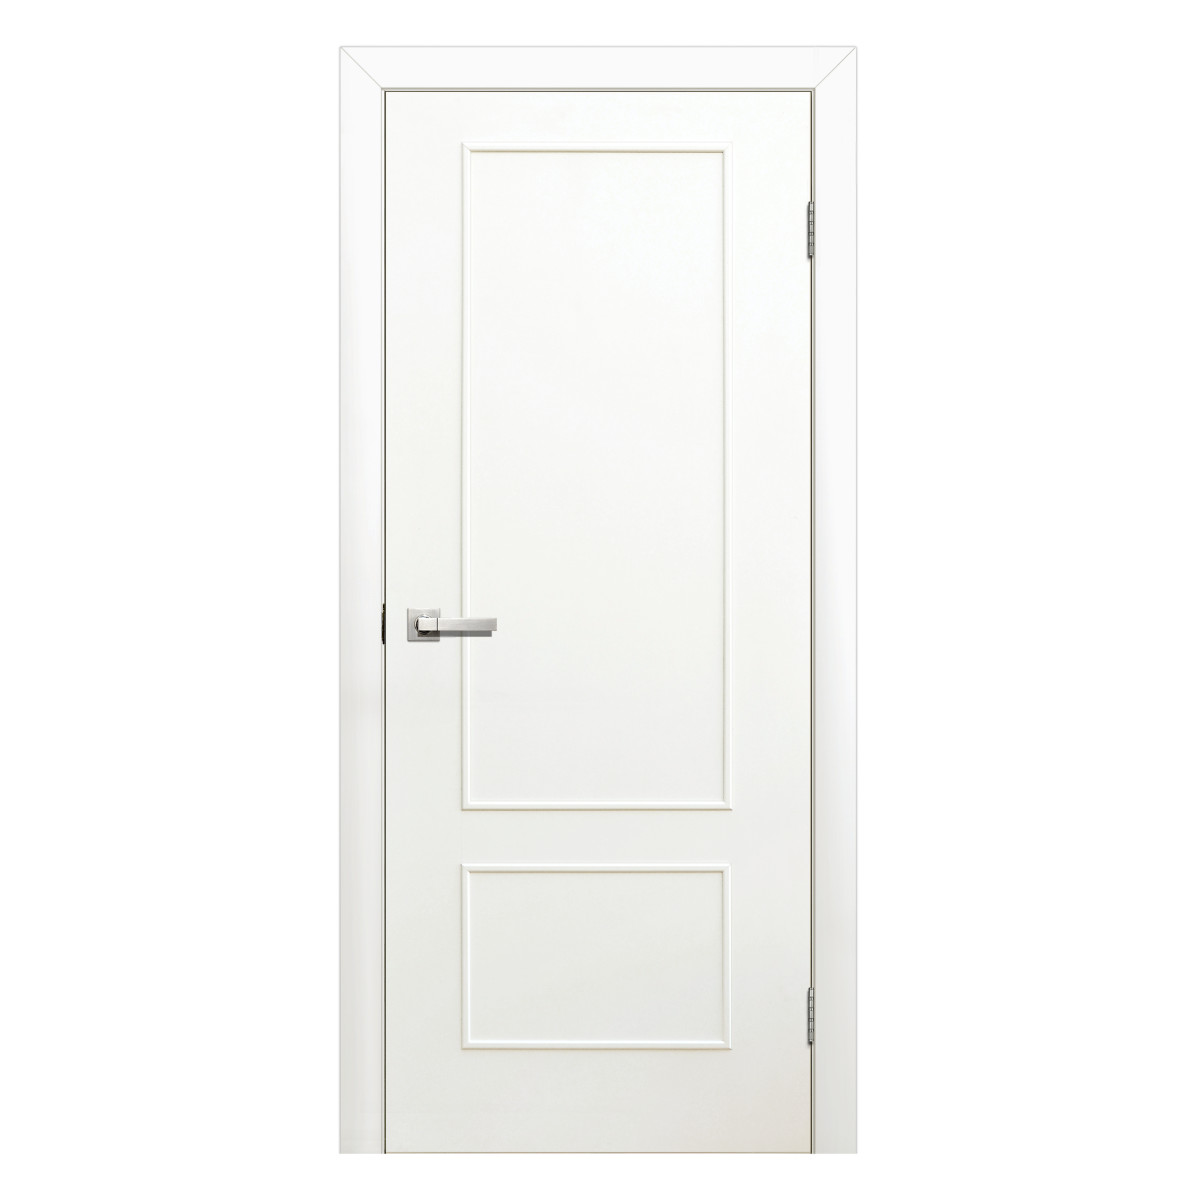 Дверь межкомнатная глухая ламинированная Классика 70x200 см цвет белый